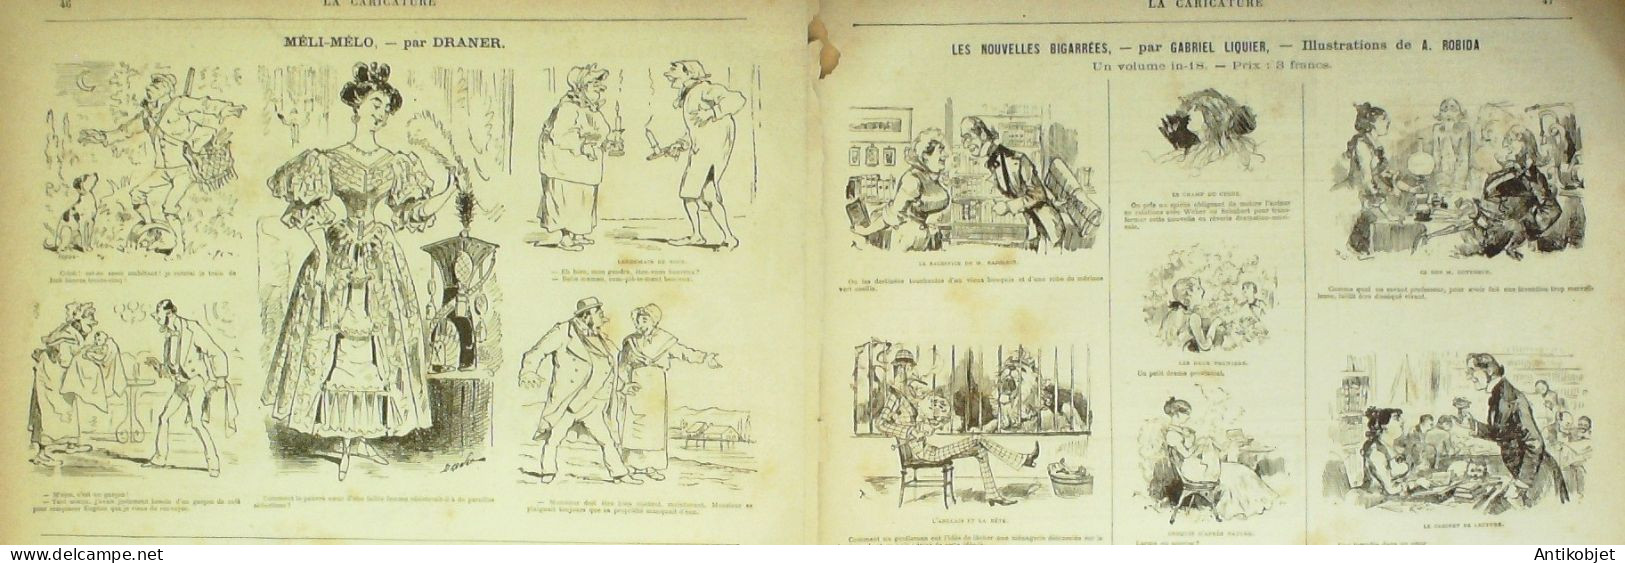 La Caricature 1881 N°  58 Paris Par Terre Robida Victorien Sardou Draner Trock - Revues Anciennes - Avant 1900